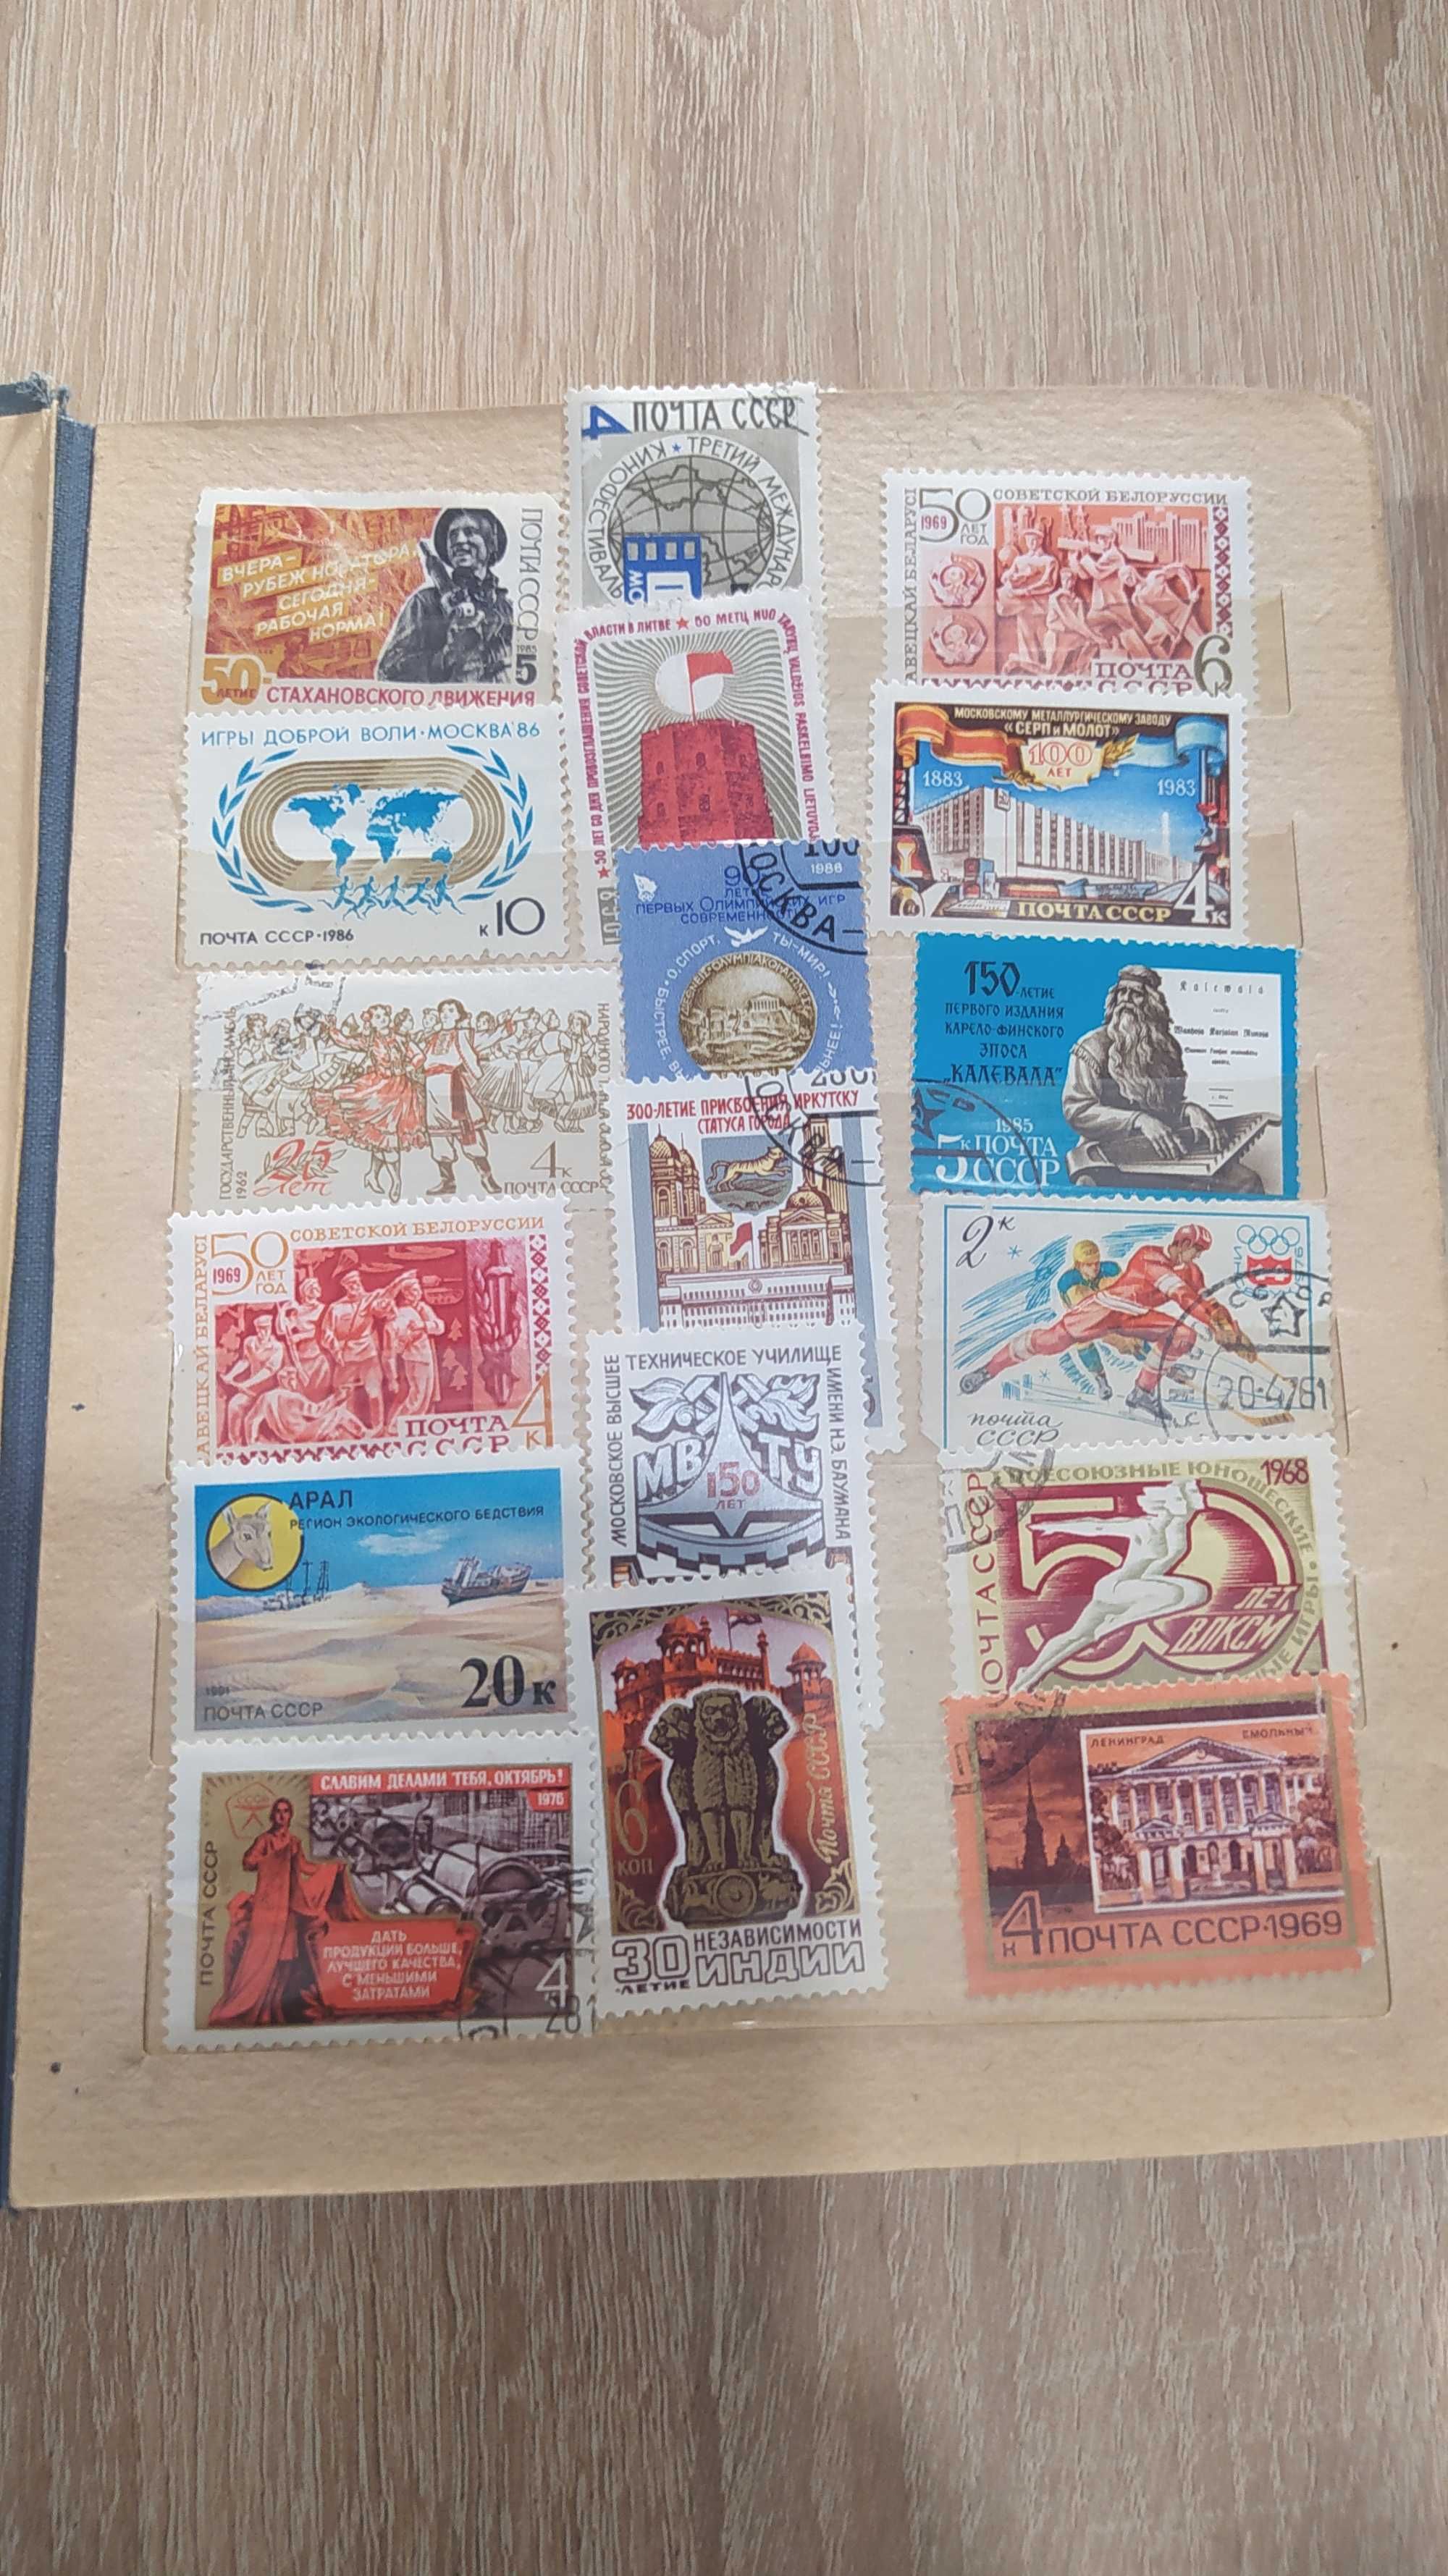 Колекция марок в альбоме